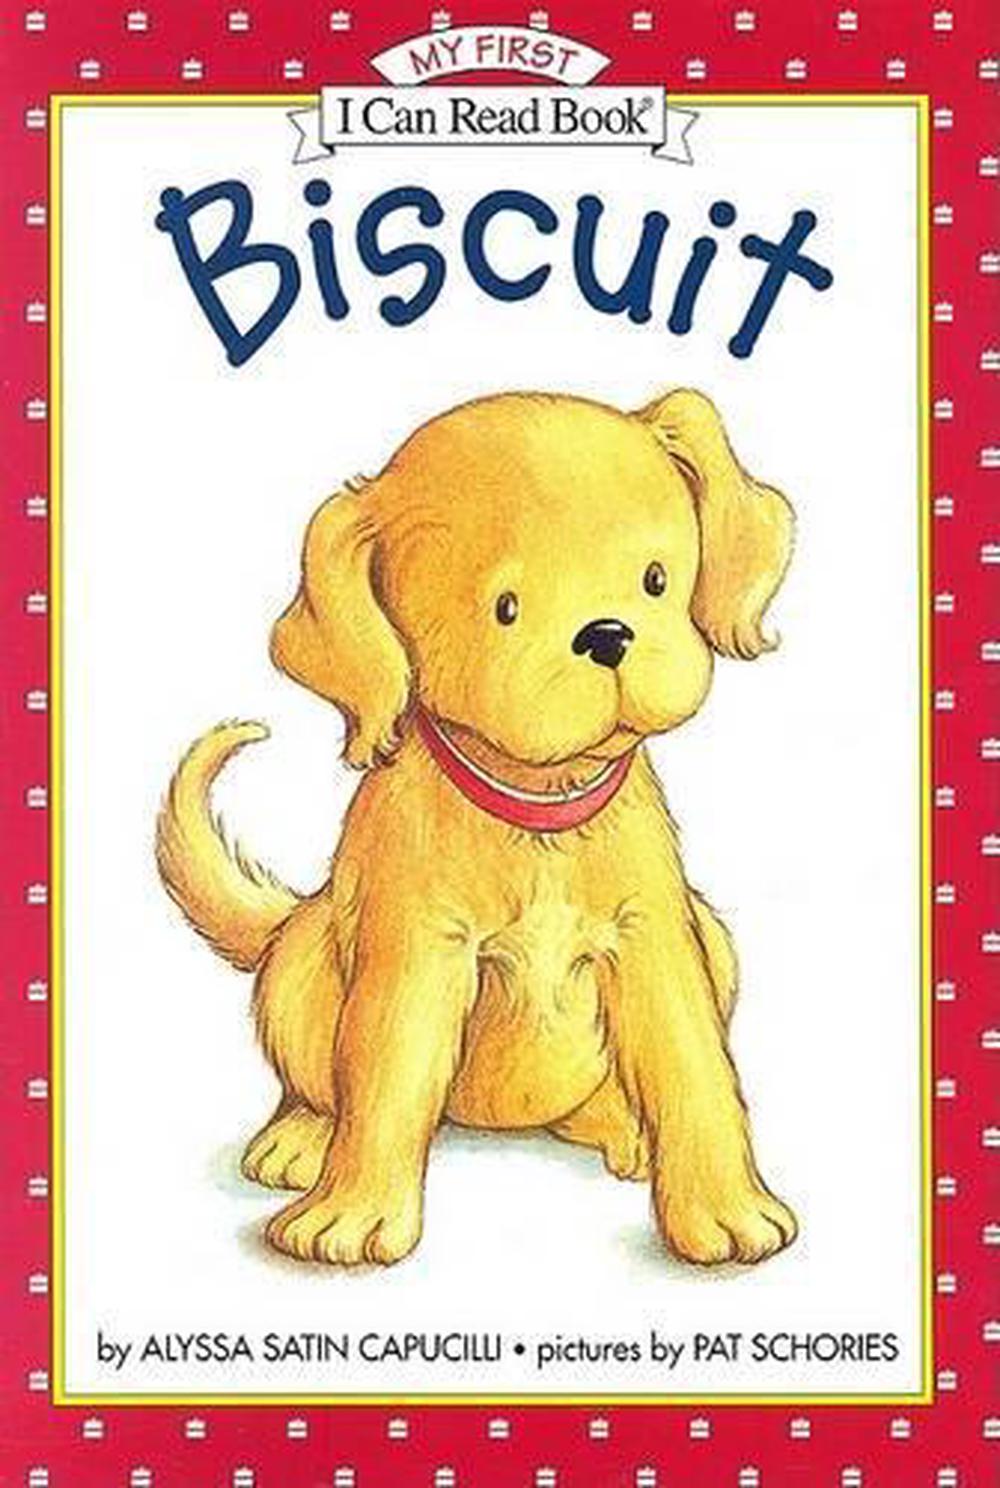 biscuit books trxt